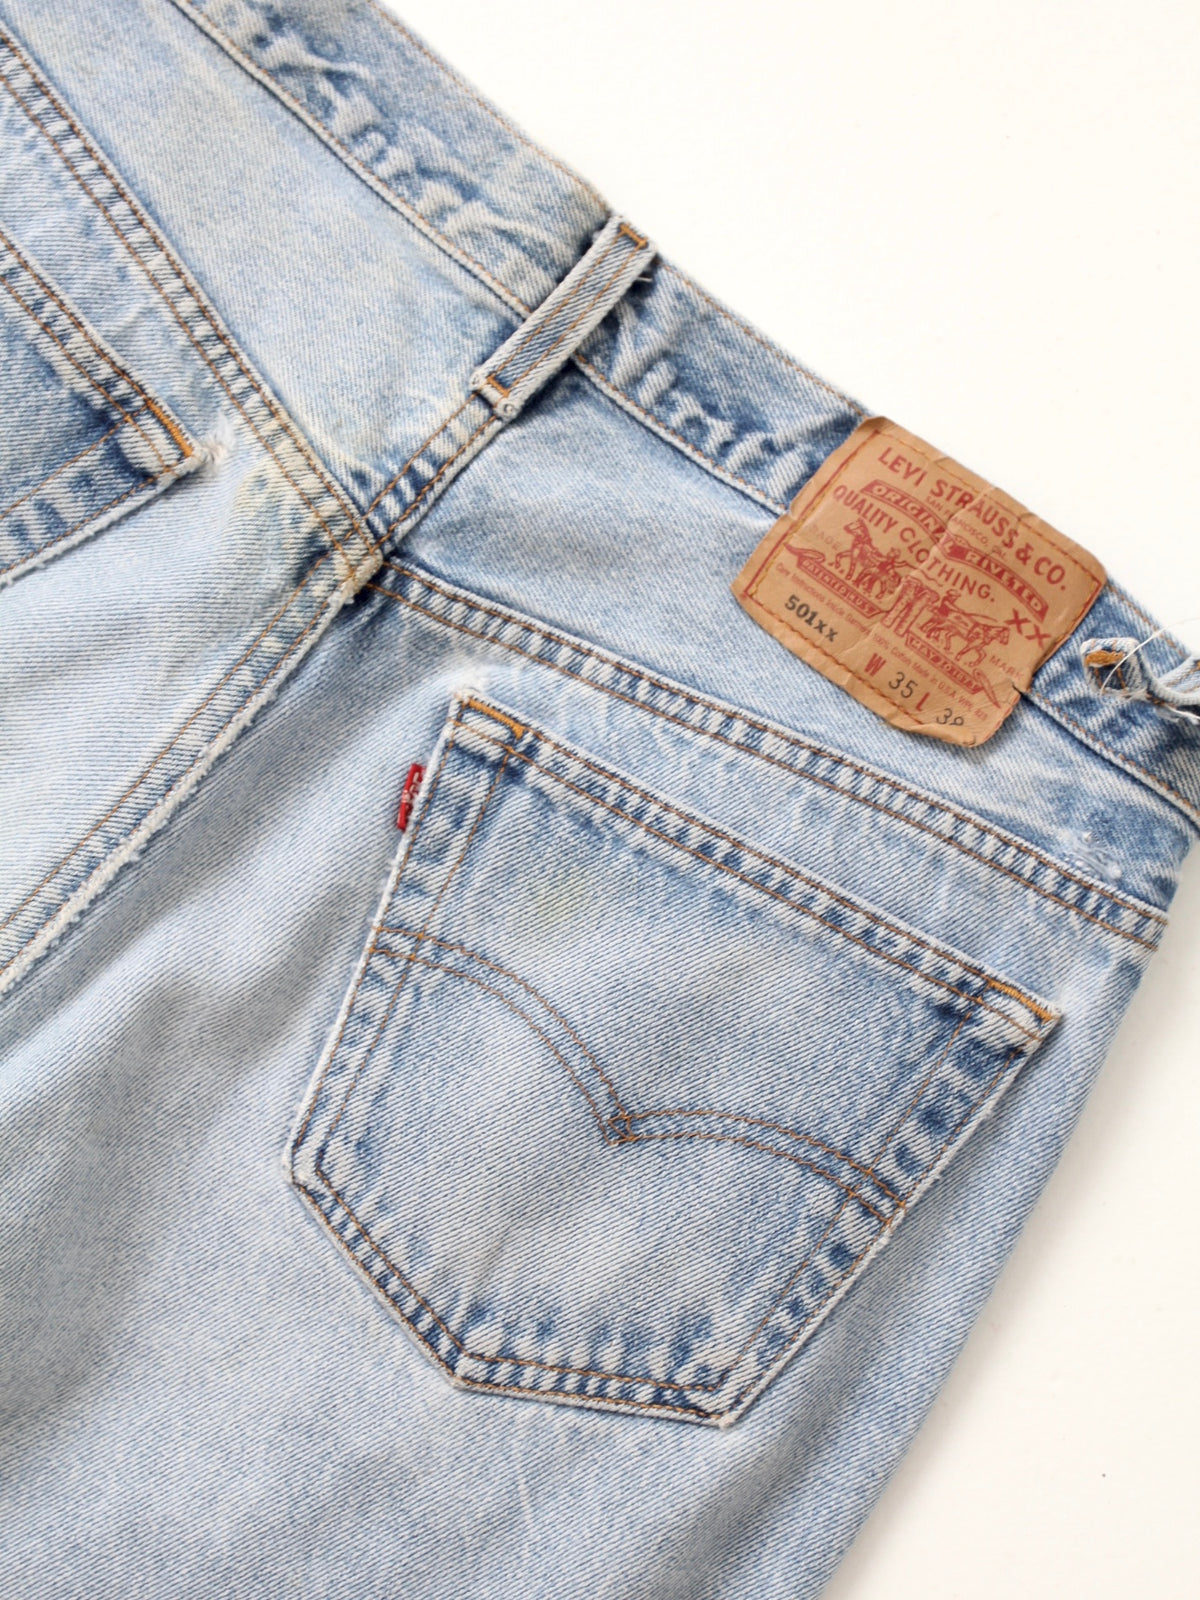 vintage Levis 501 jeans, 33 x 33 – 86 Vintage